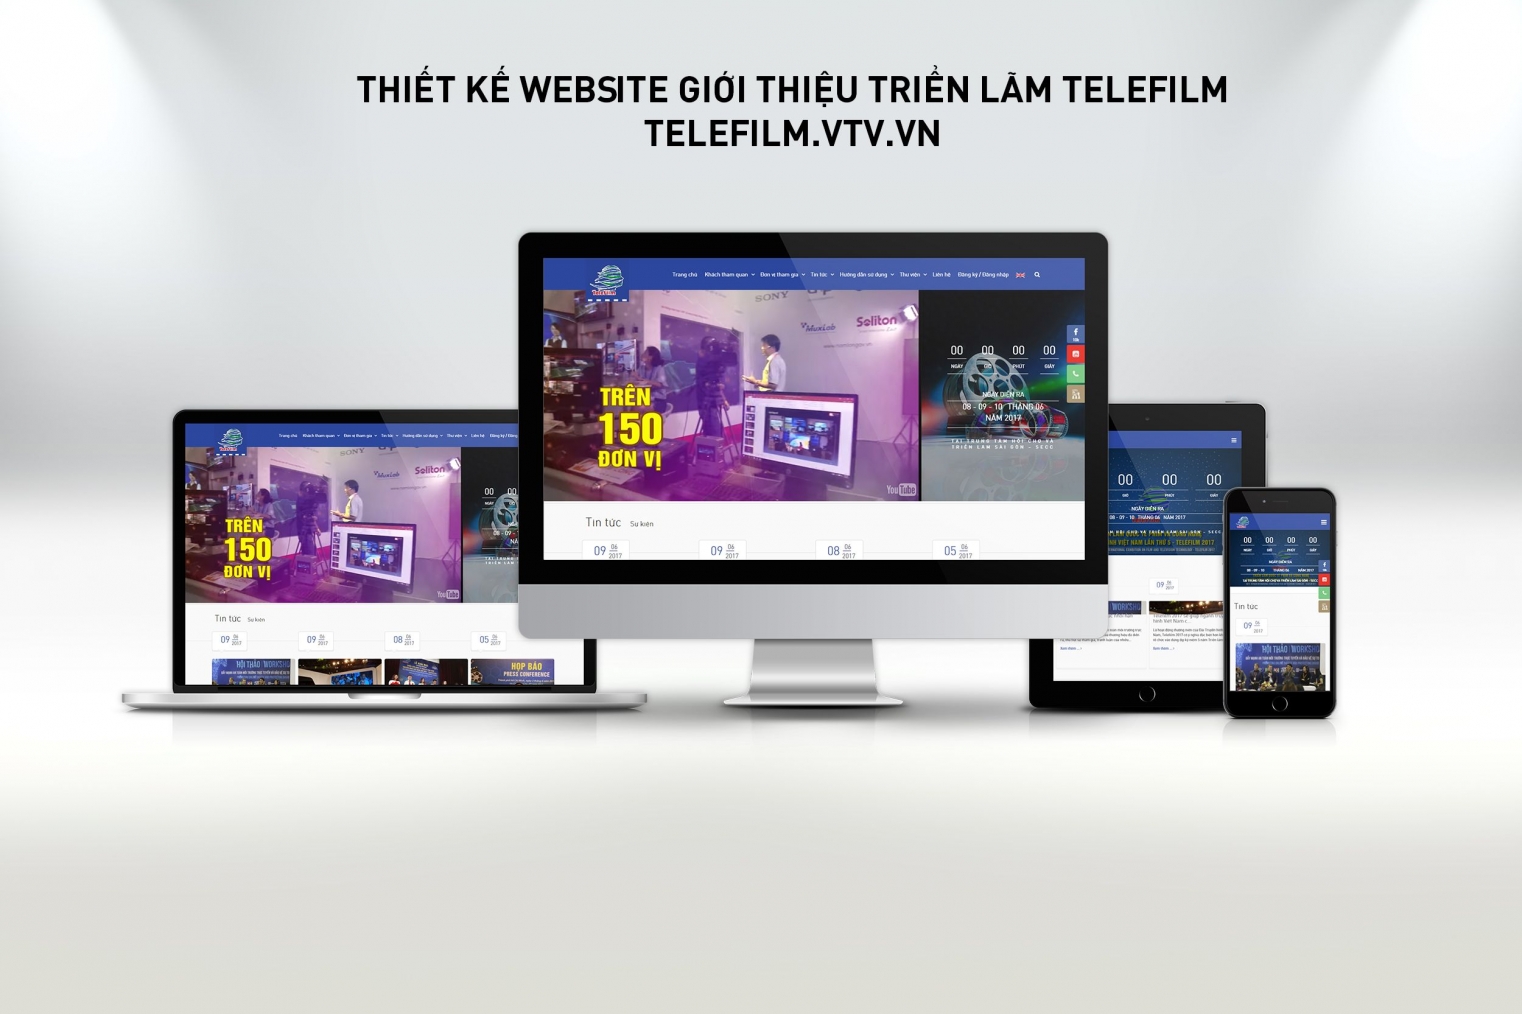 Thiết kế website giới thiệu chương trình triển lãm telefilm